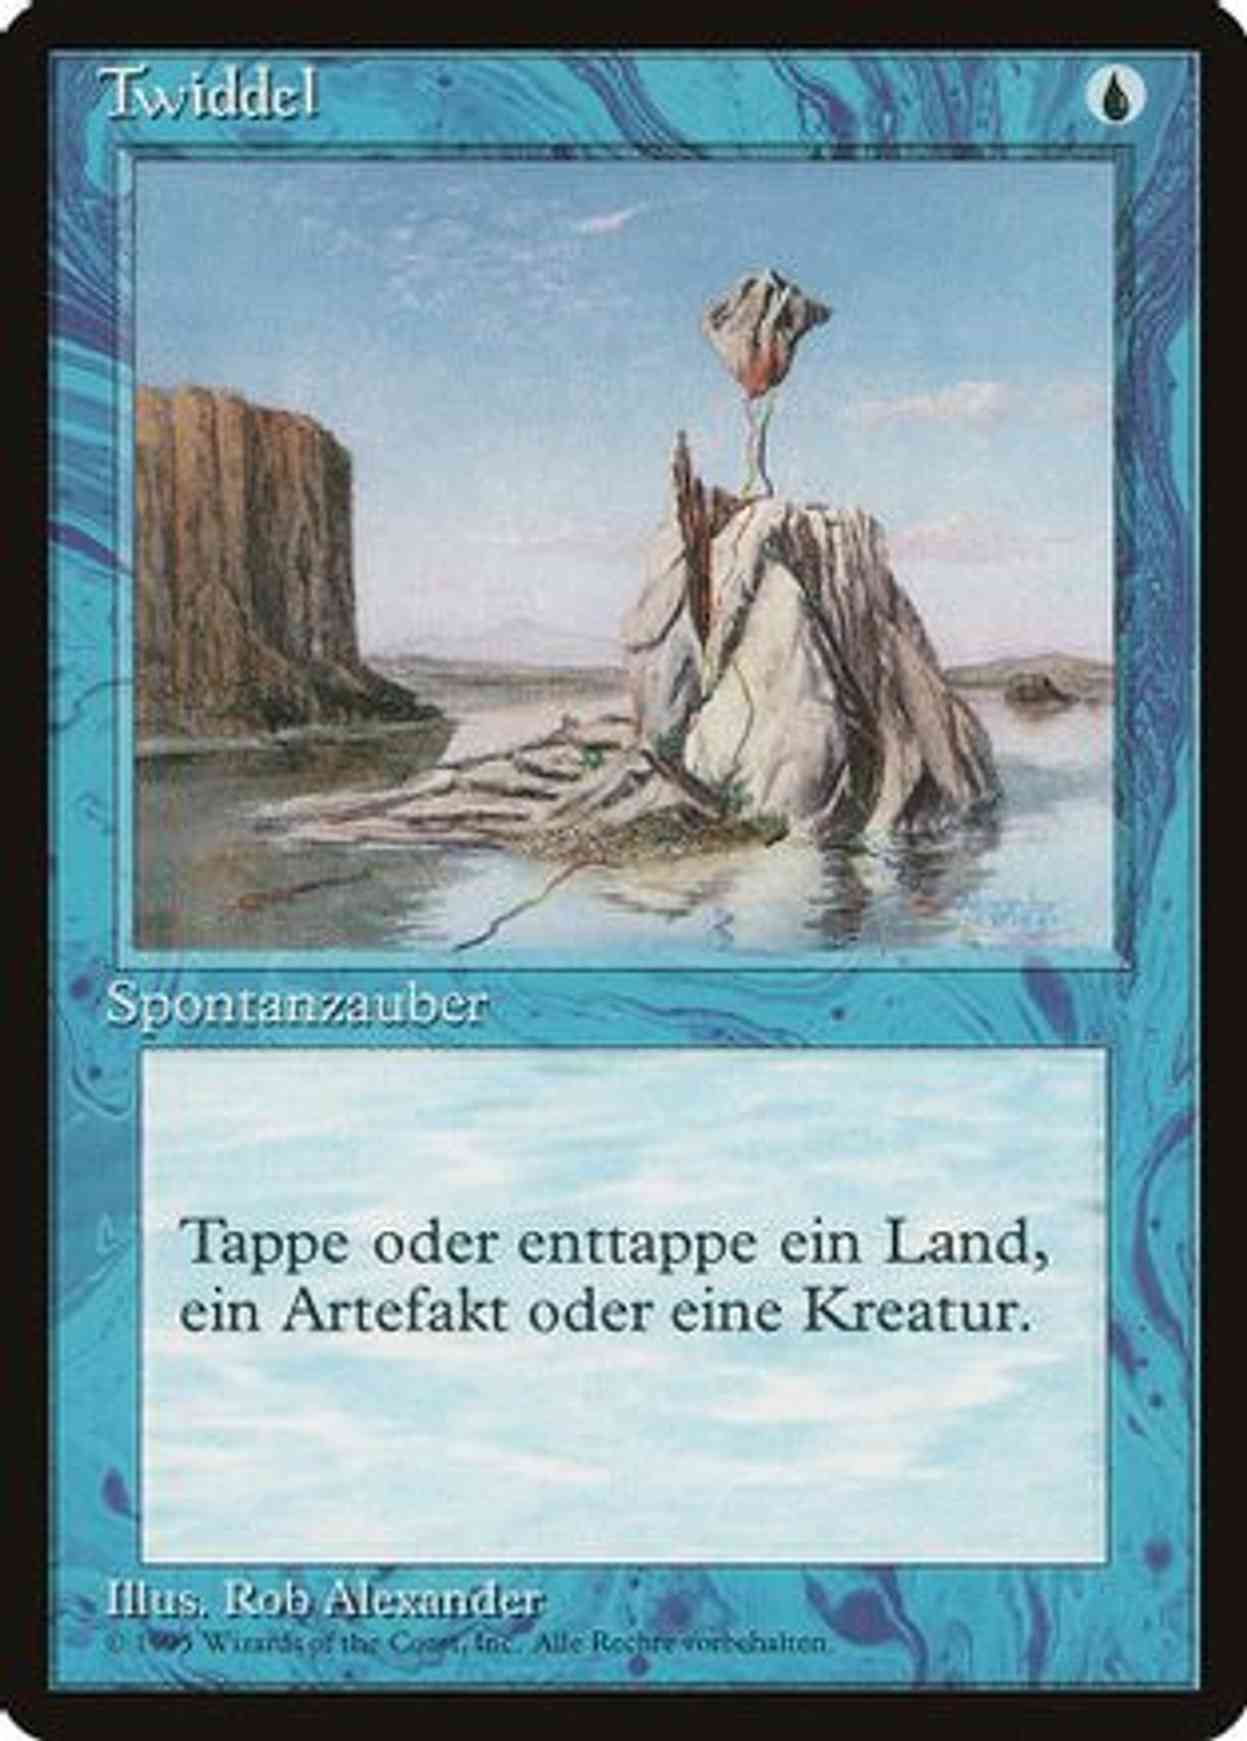 Twiddle (German) - "Twiddel" magic card front